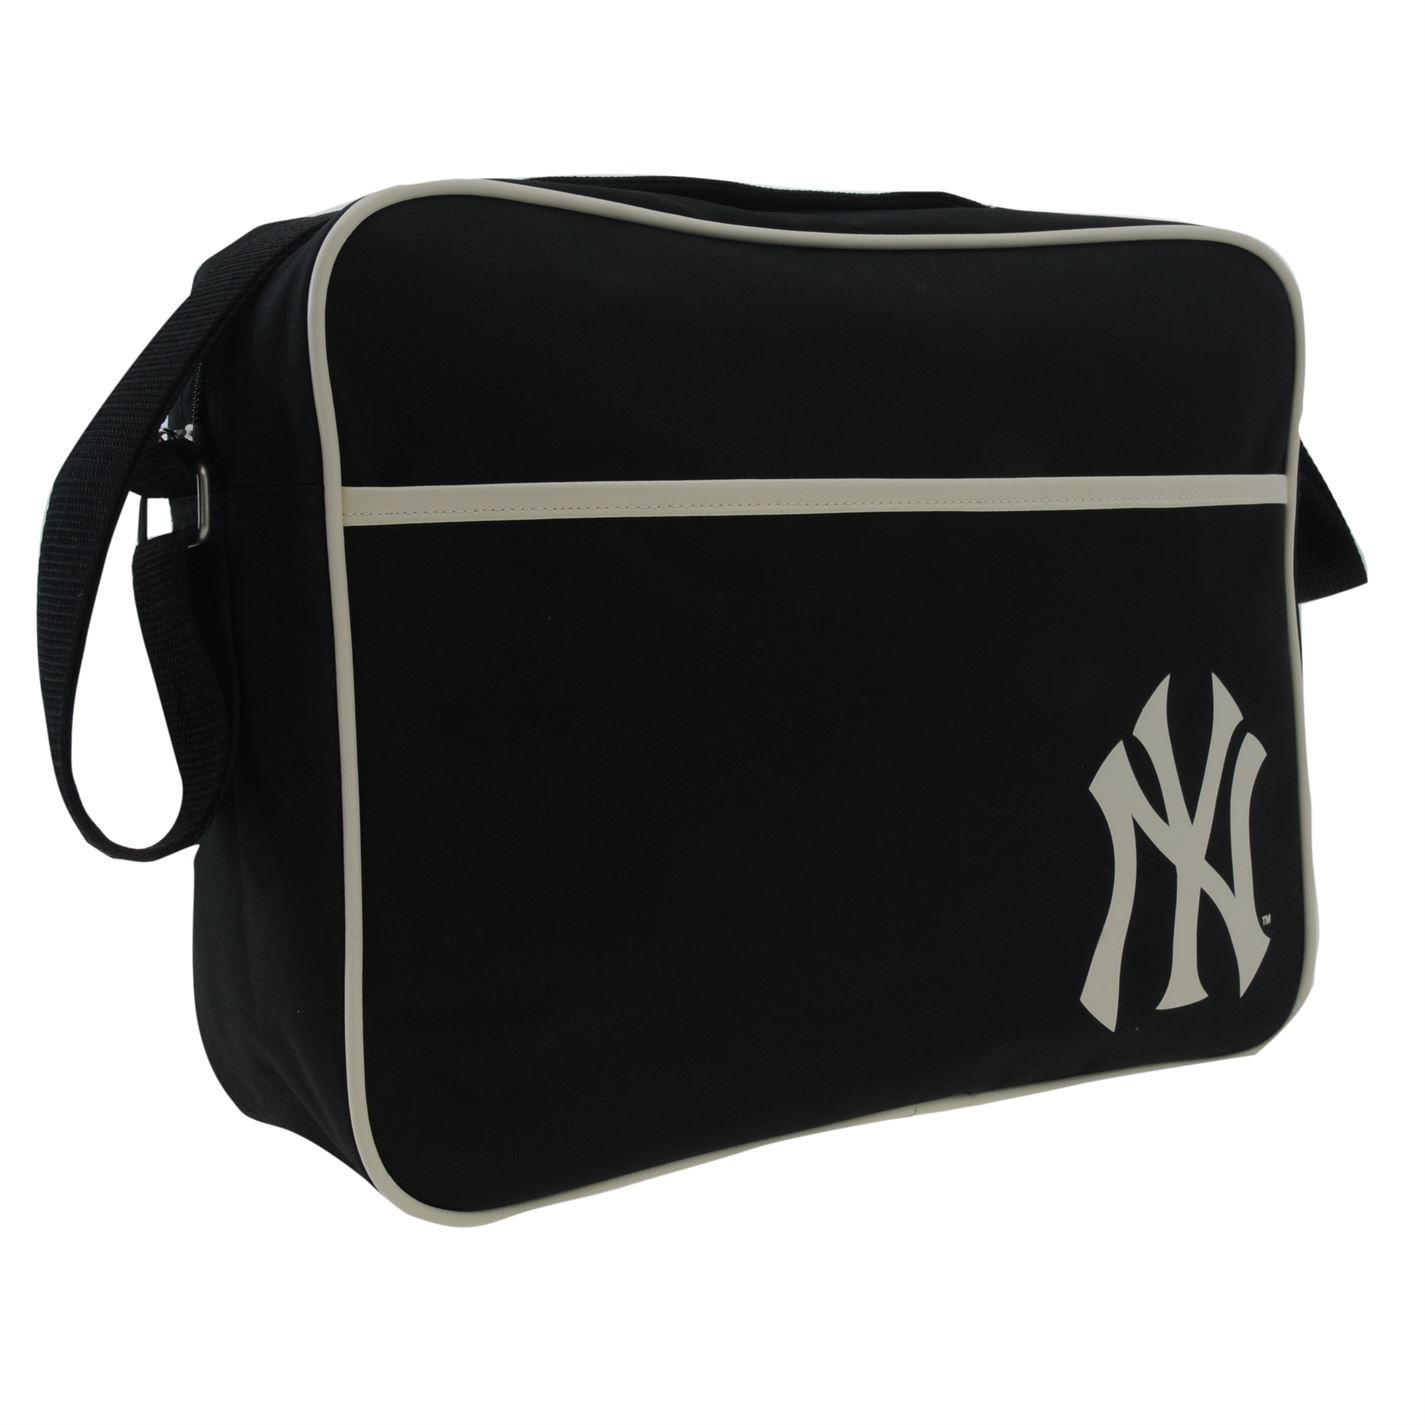 Flight bag. MLB New York Bag сумка. Сумка New York Yankees. Сумка New York Yankees мужская. Прозрачная сумка New York Yankees.